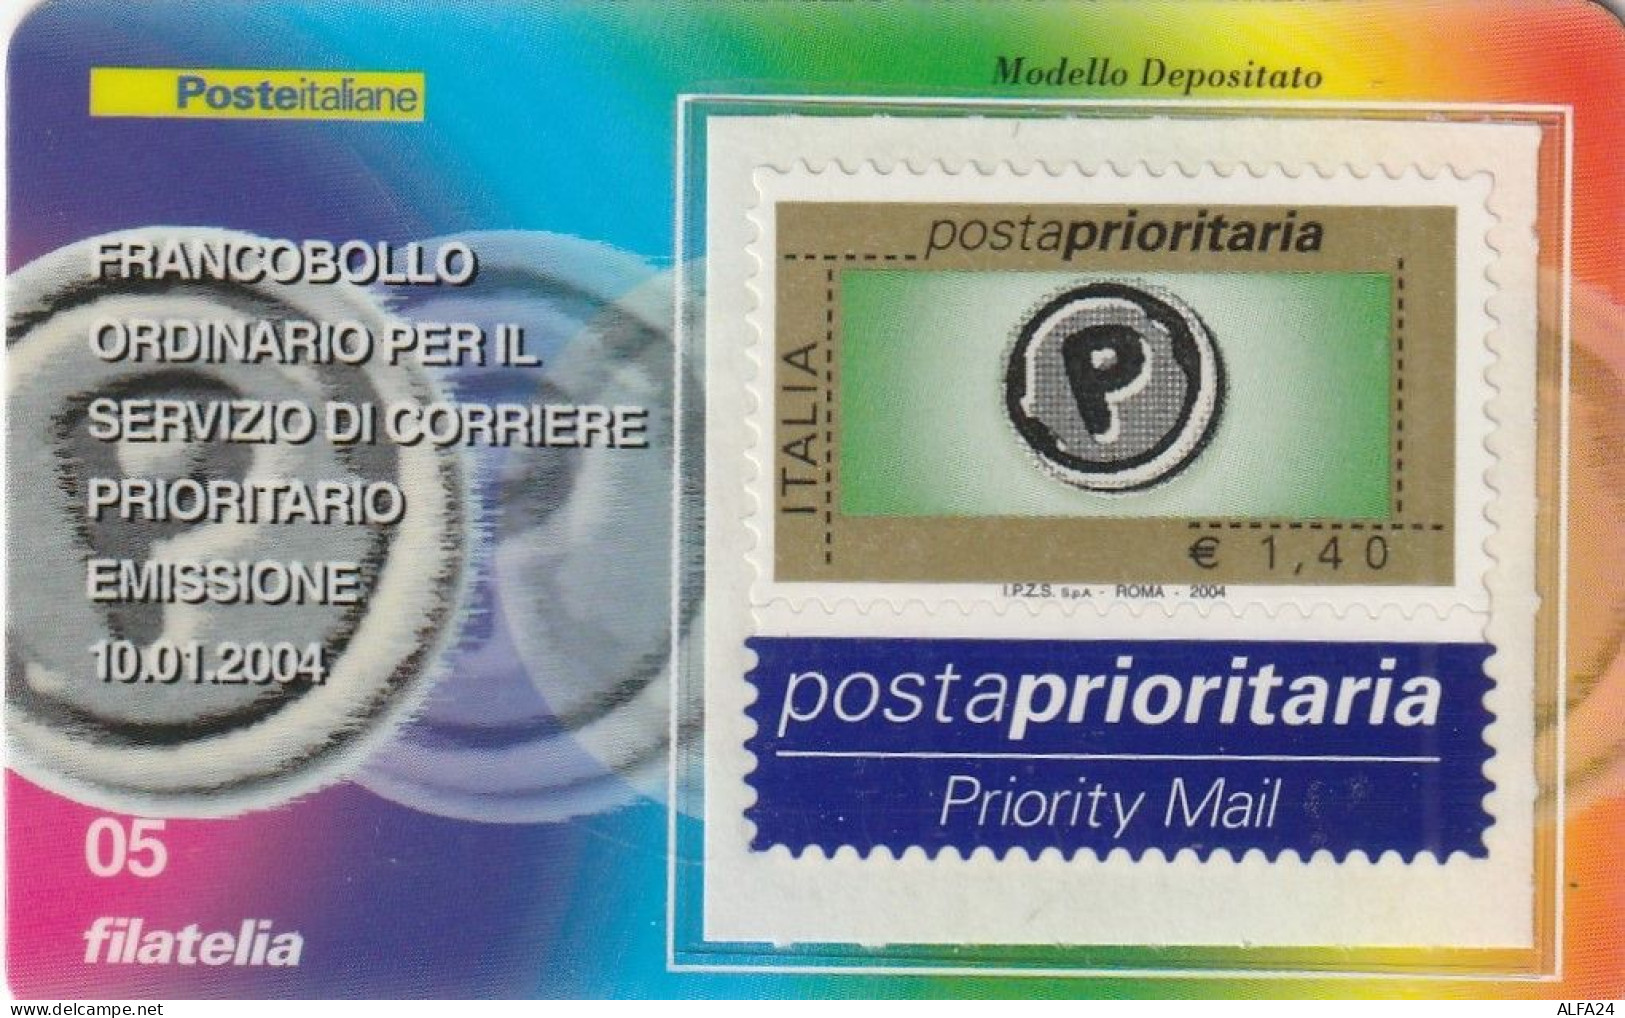 TESSERA FILATELICA VALORE 1,4 EURO POSTA PRIORITARIA (TF983 - Cartes Philatéliques